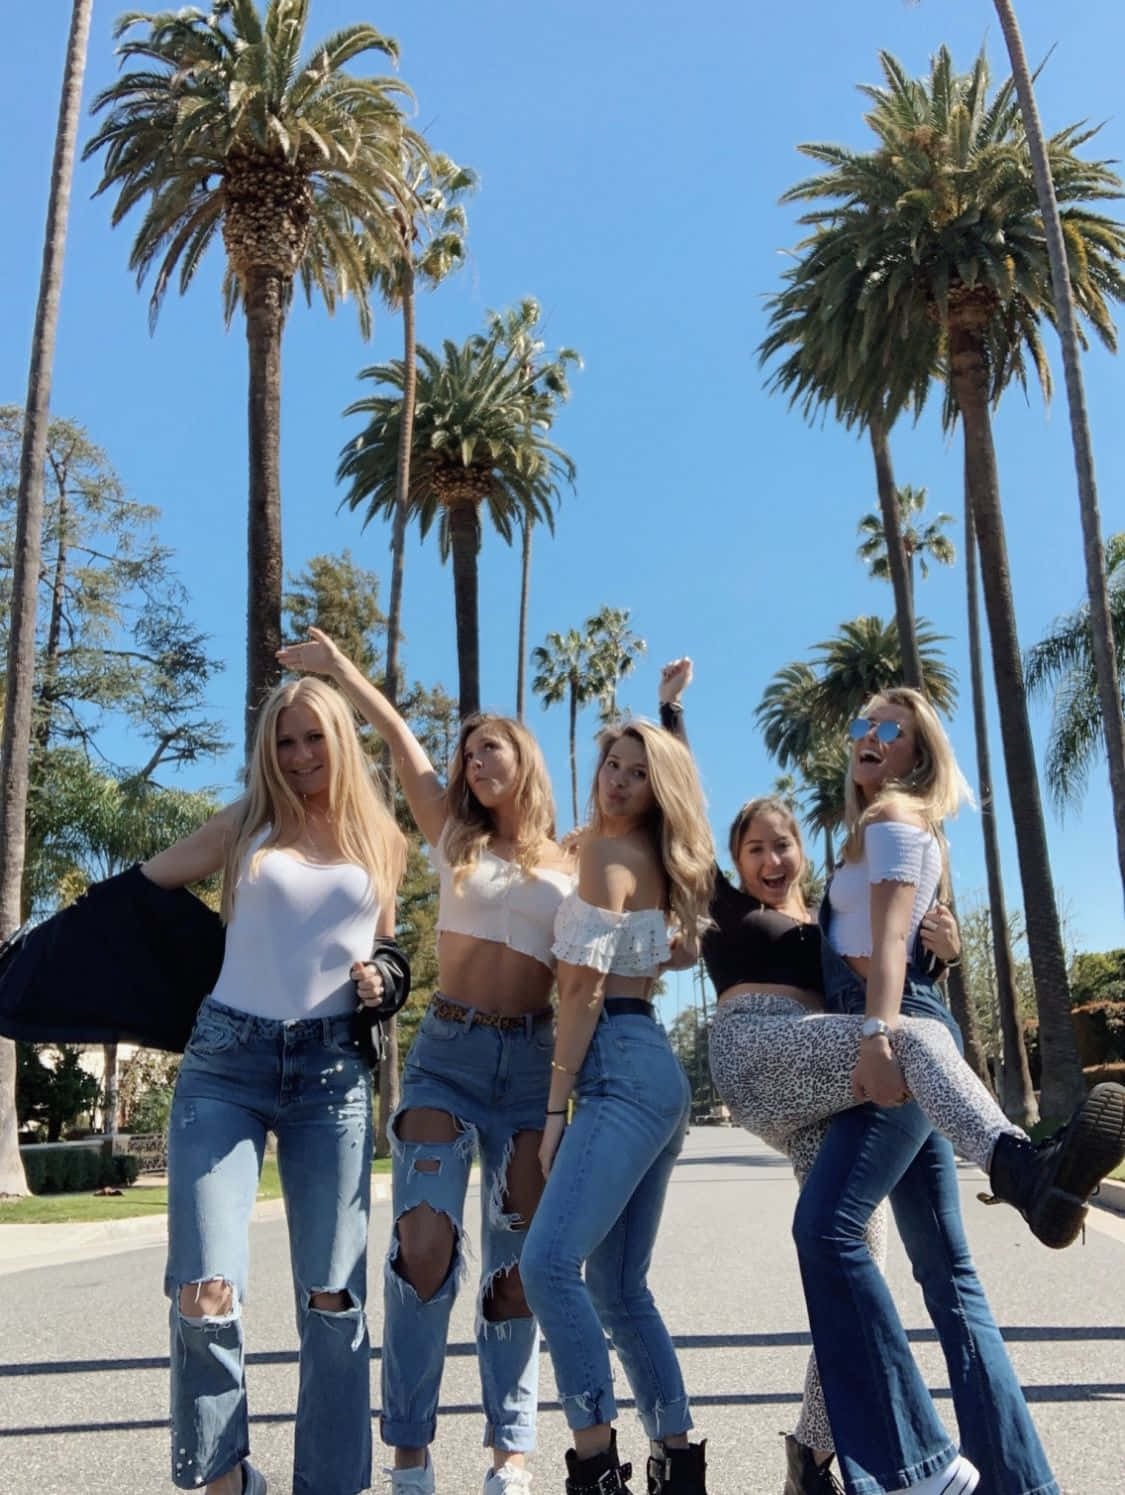 Ungrupo De Chicas En Jeans Y Camisetas Posando Para Una Foto Fondo de pantalla